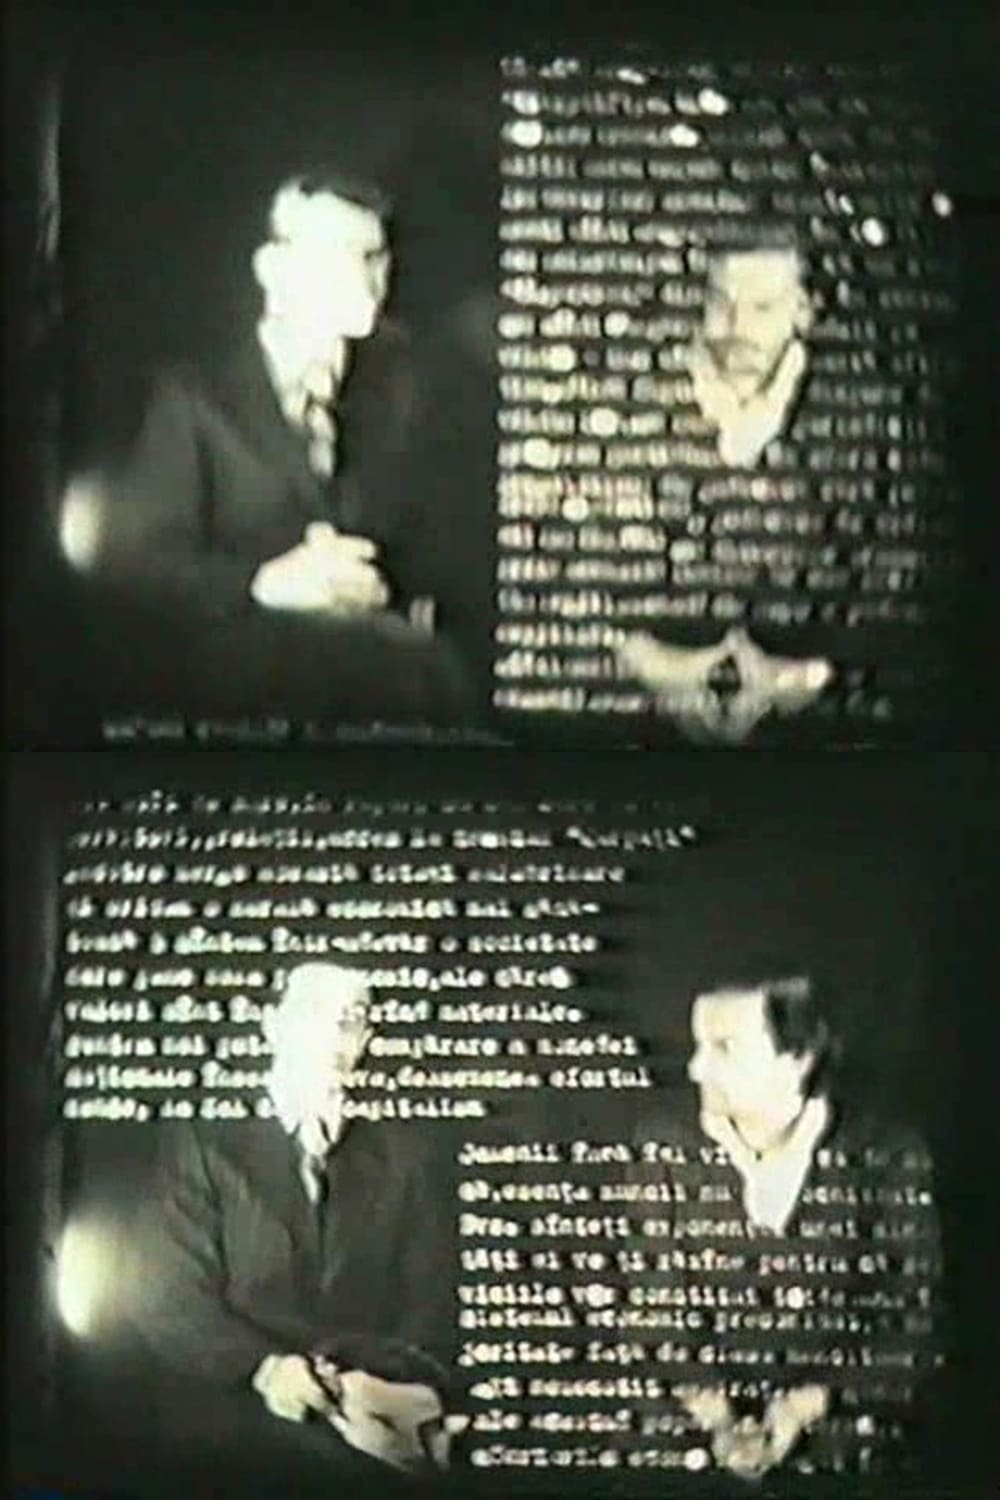 Dialogue with Ceauşescu